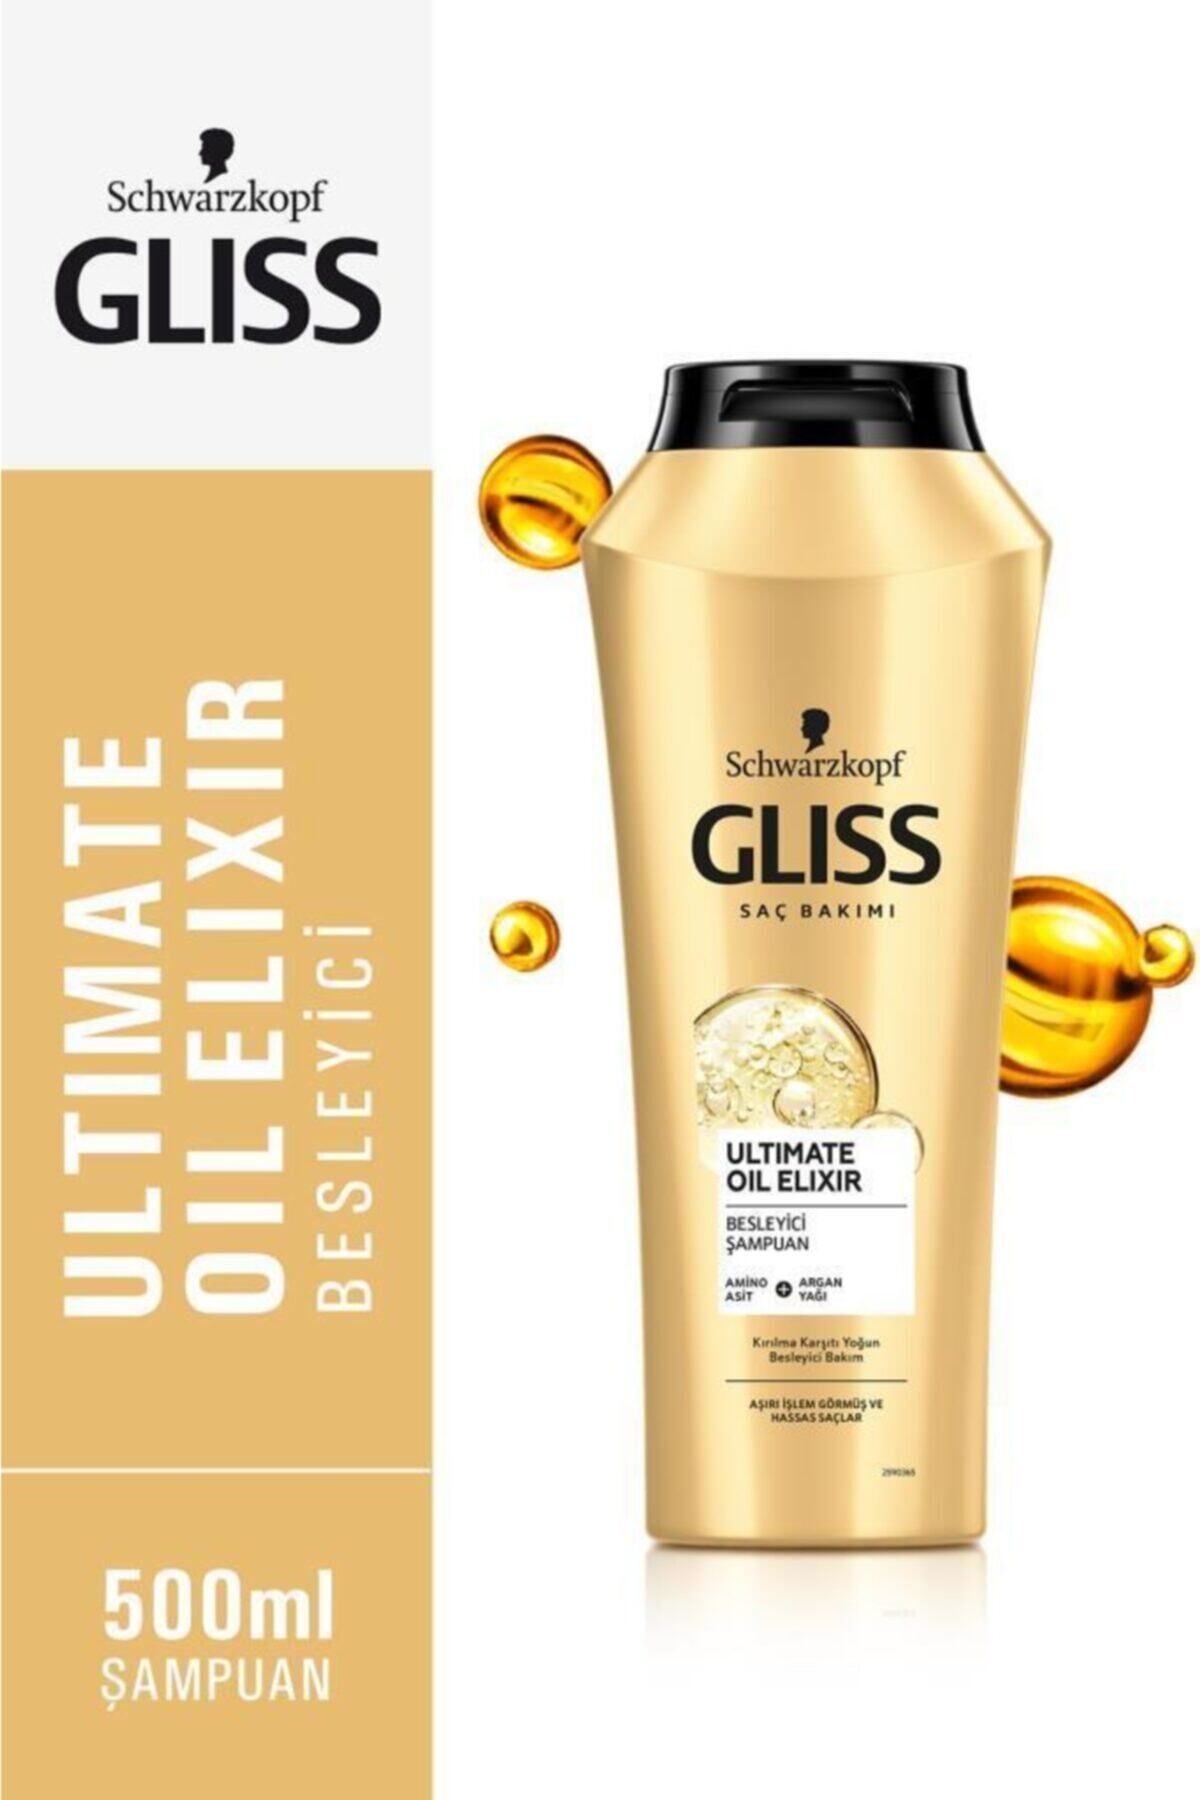 Gliss Ultimate Oil Elixir Besleyici Şampuan - Aminoasit Ve Argan Yağı Ile 500 ml